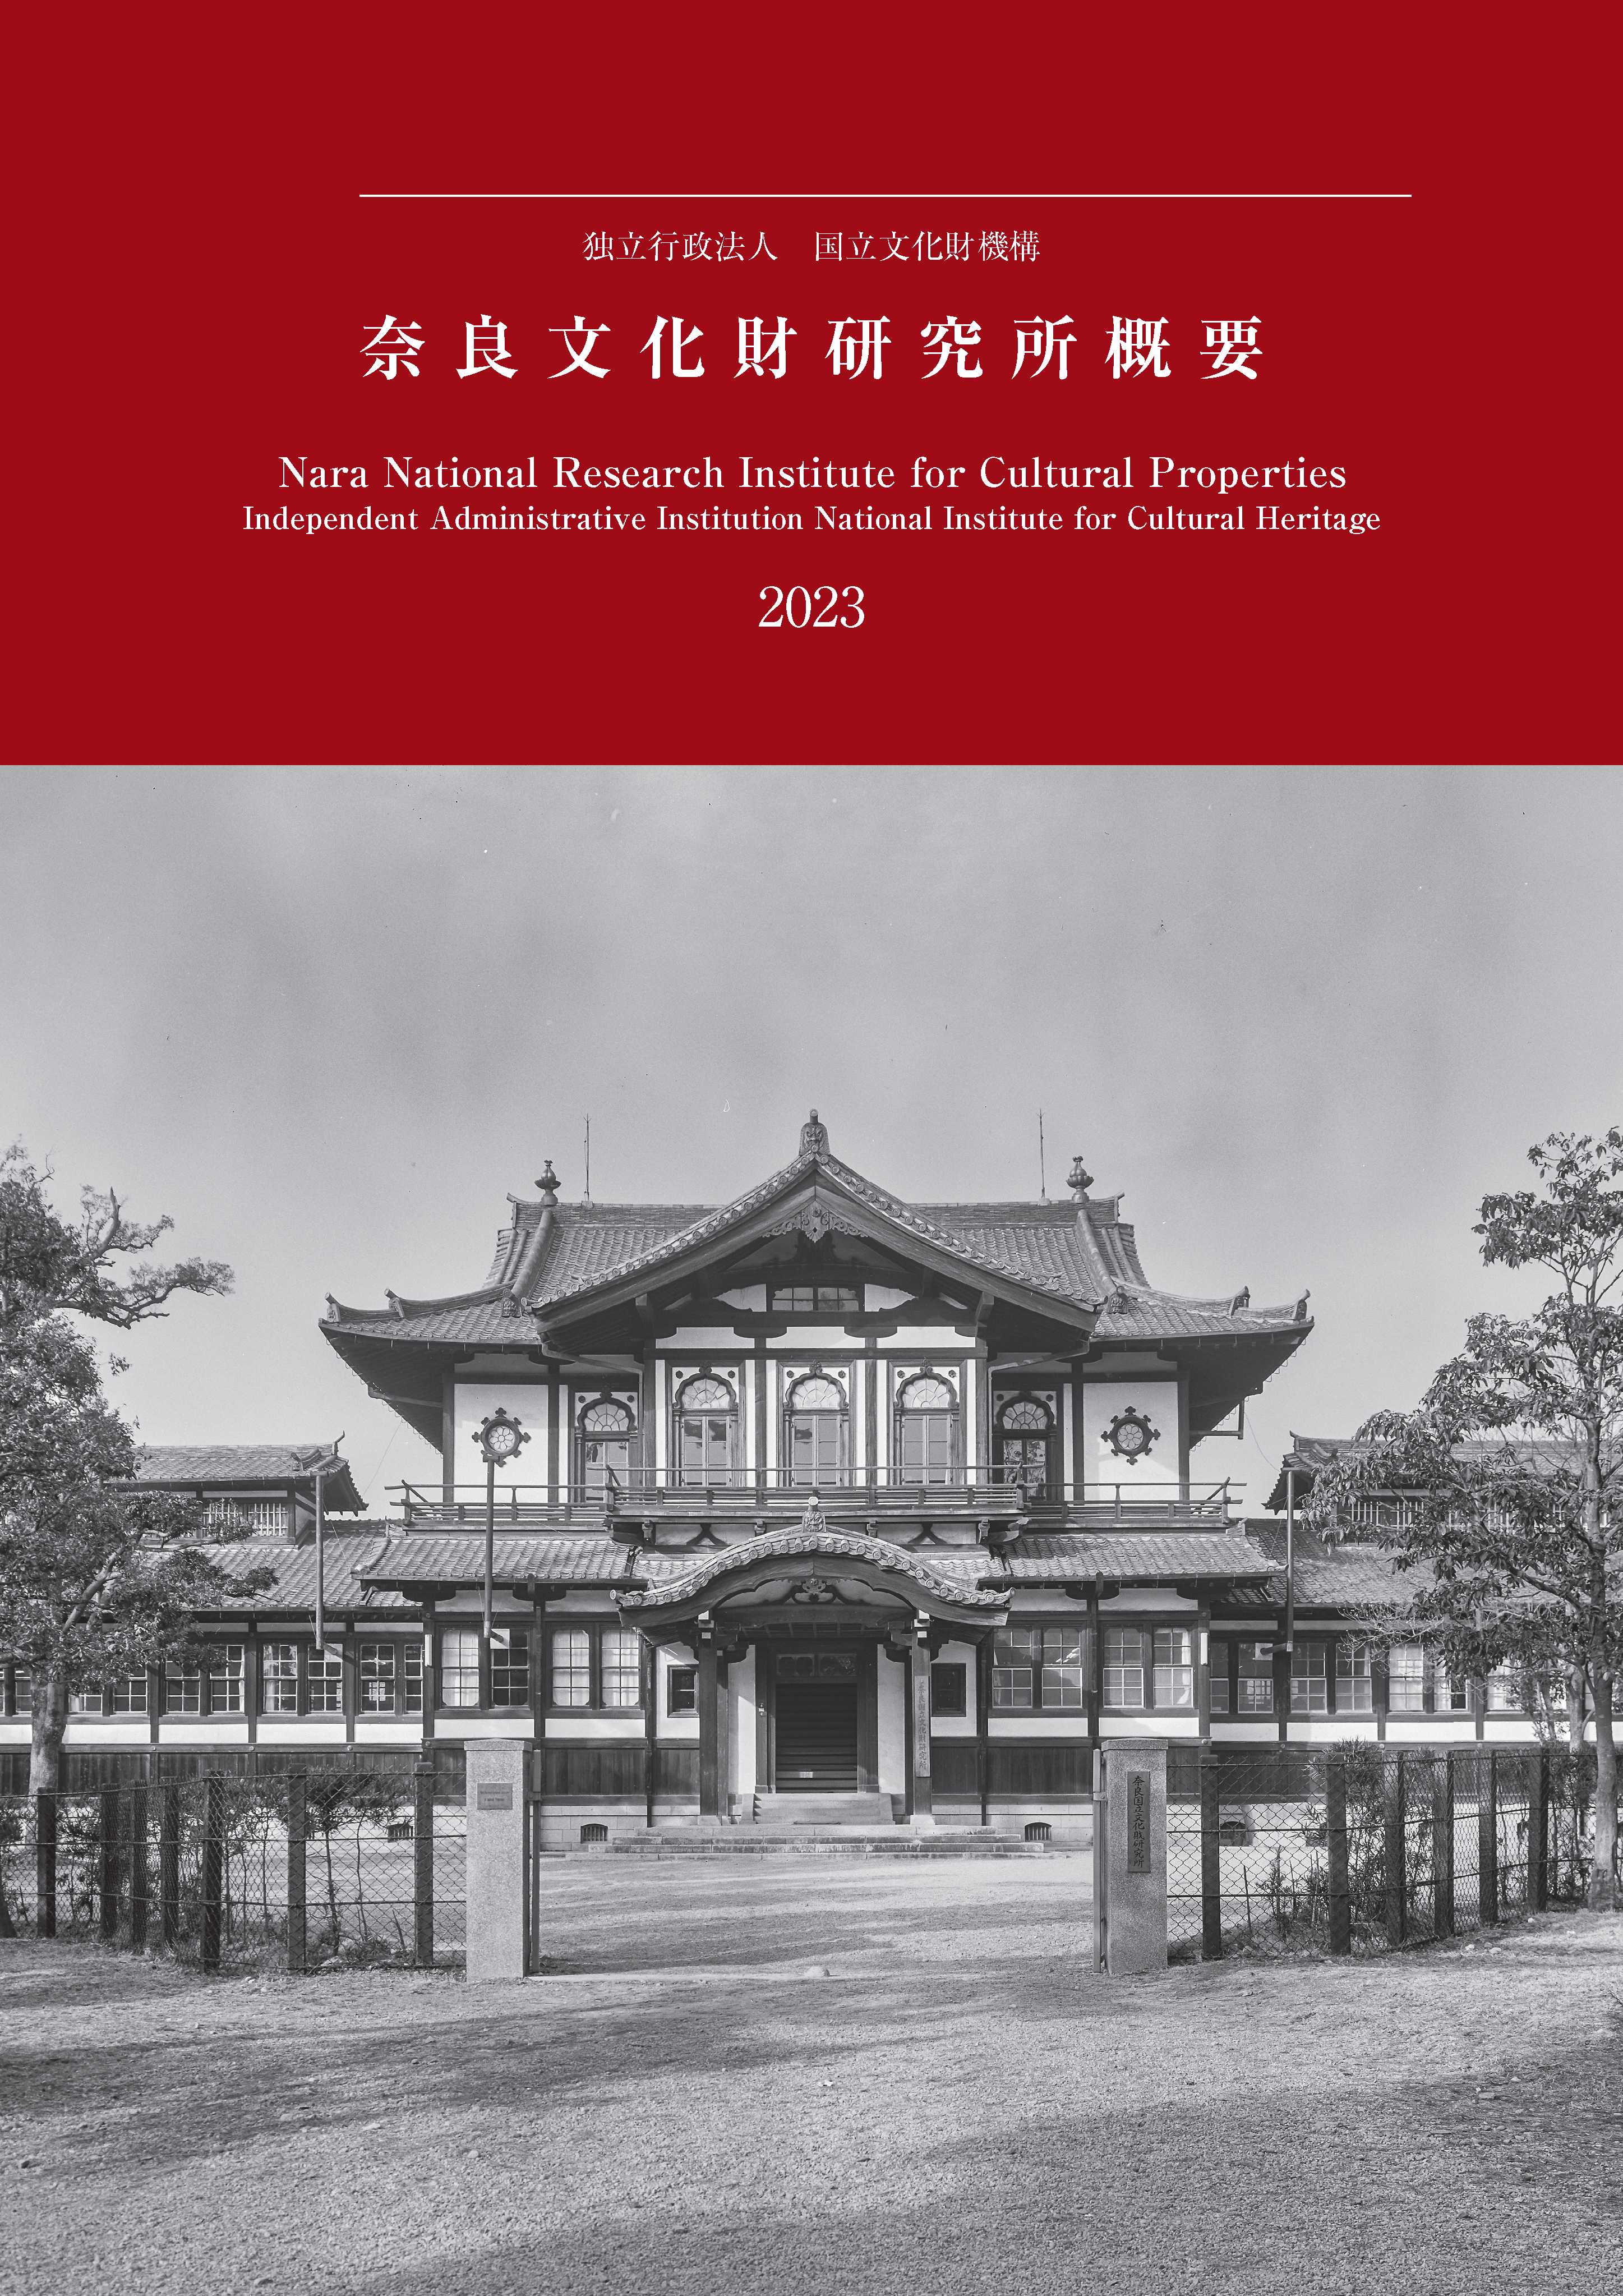 奈良文化財研究所概要2023』を公開しました | NEWSCAST